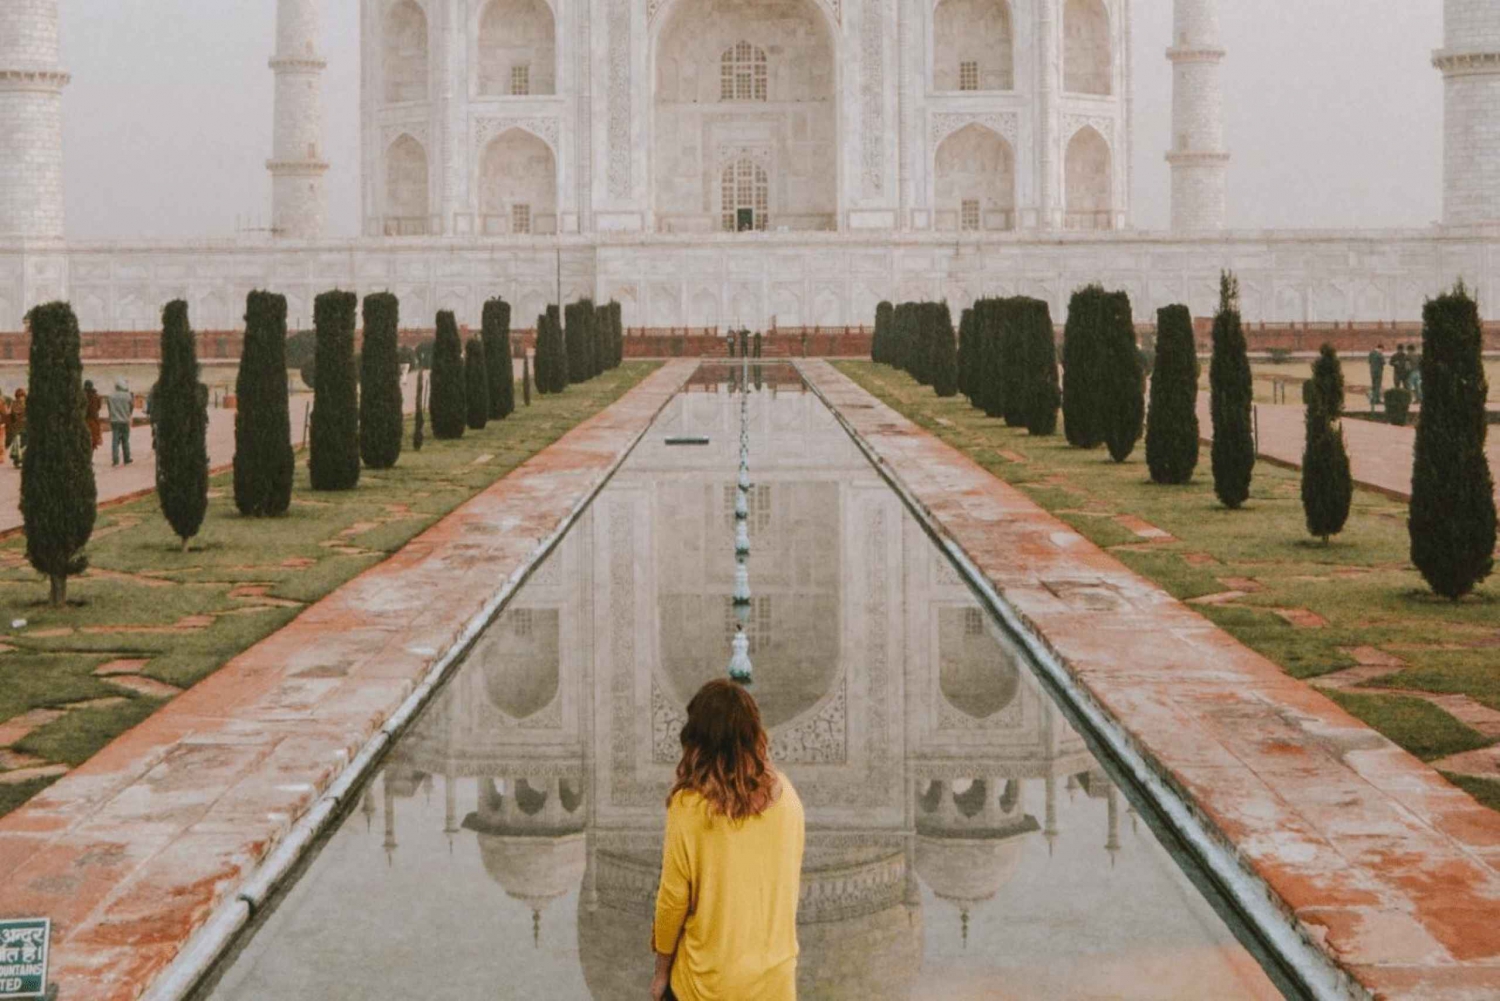 Delhistä/jaipurista:- Samapäiväinen Taj Mahal & Agra Tour autolla